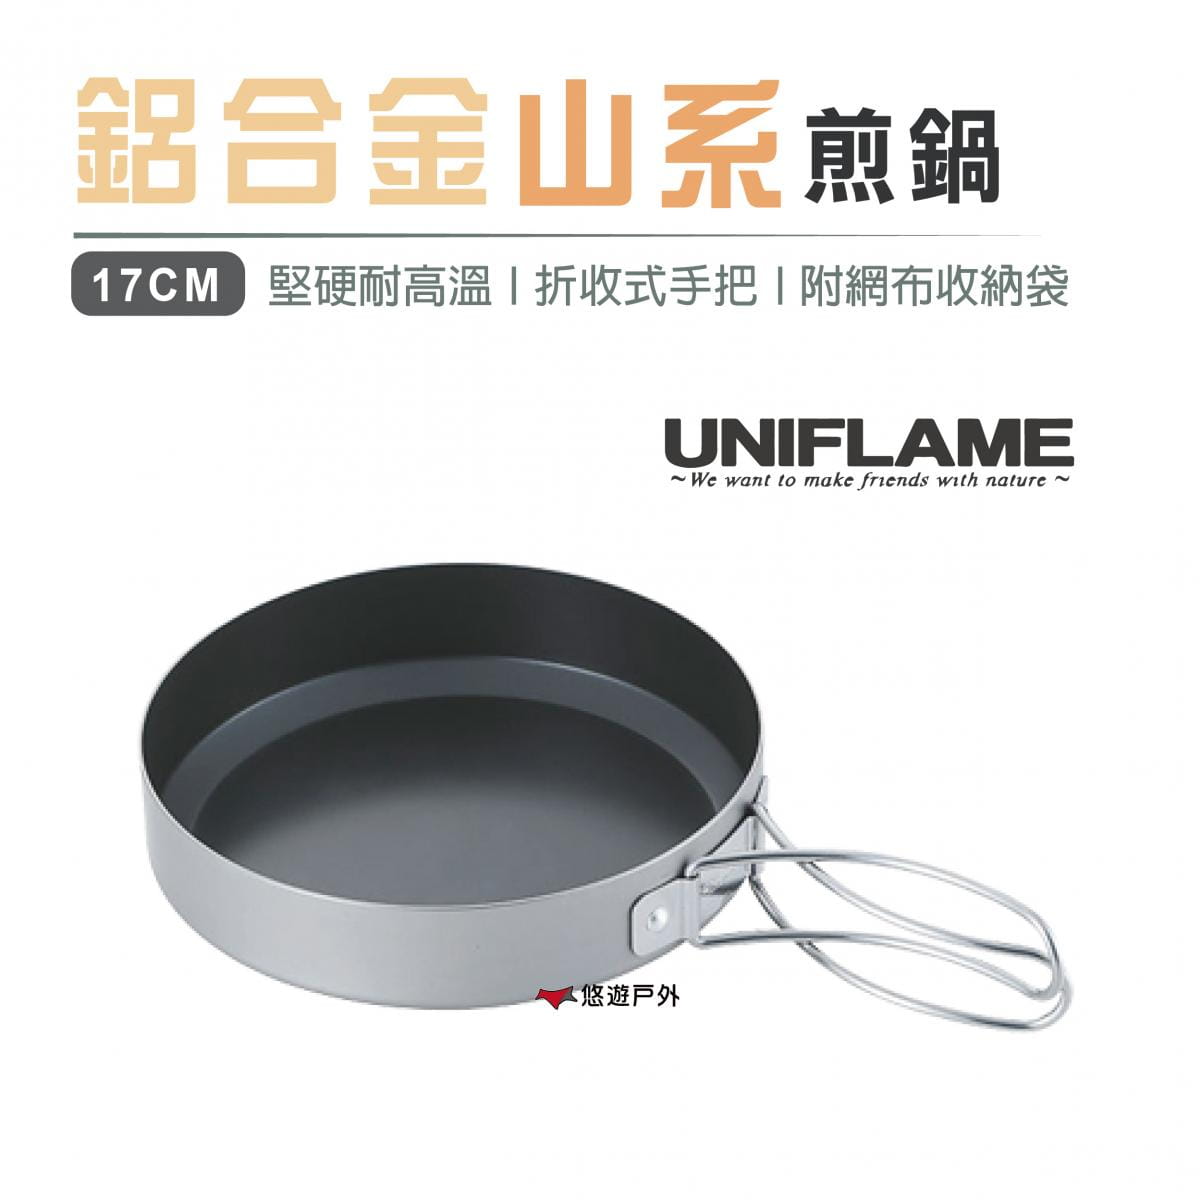 【日本 UNIFLAME】鋁合金山系煎鍋 17cm_U667651 (悠遊戶外) 0